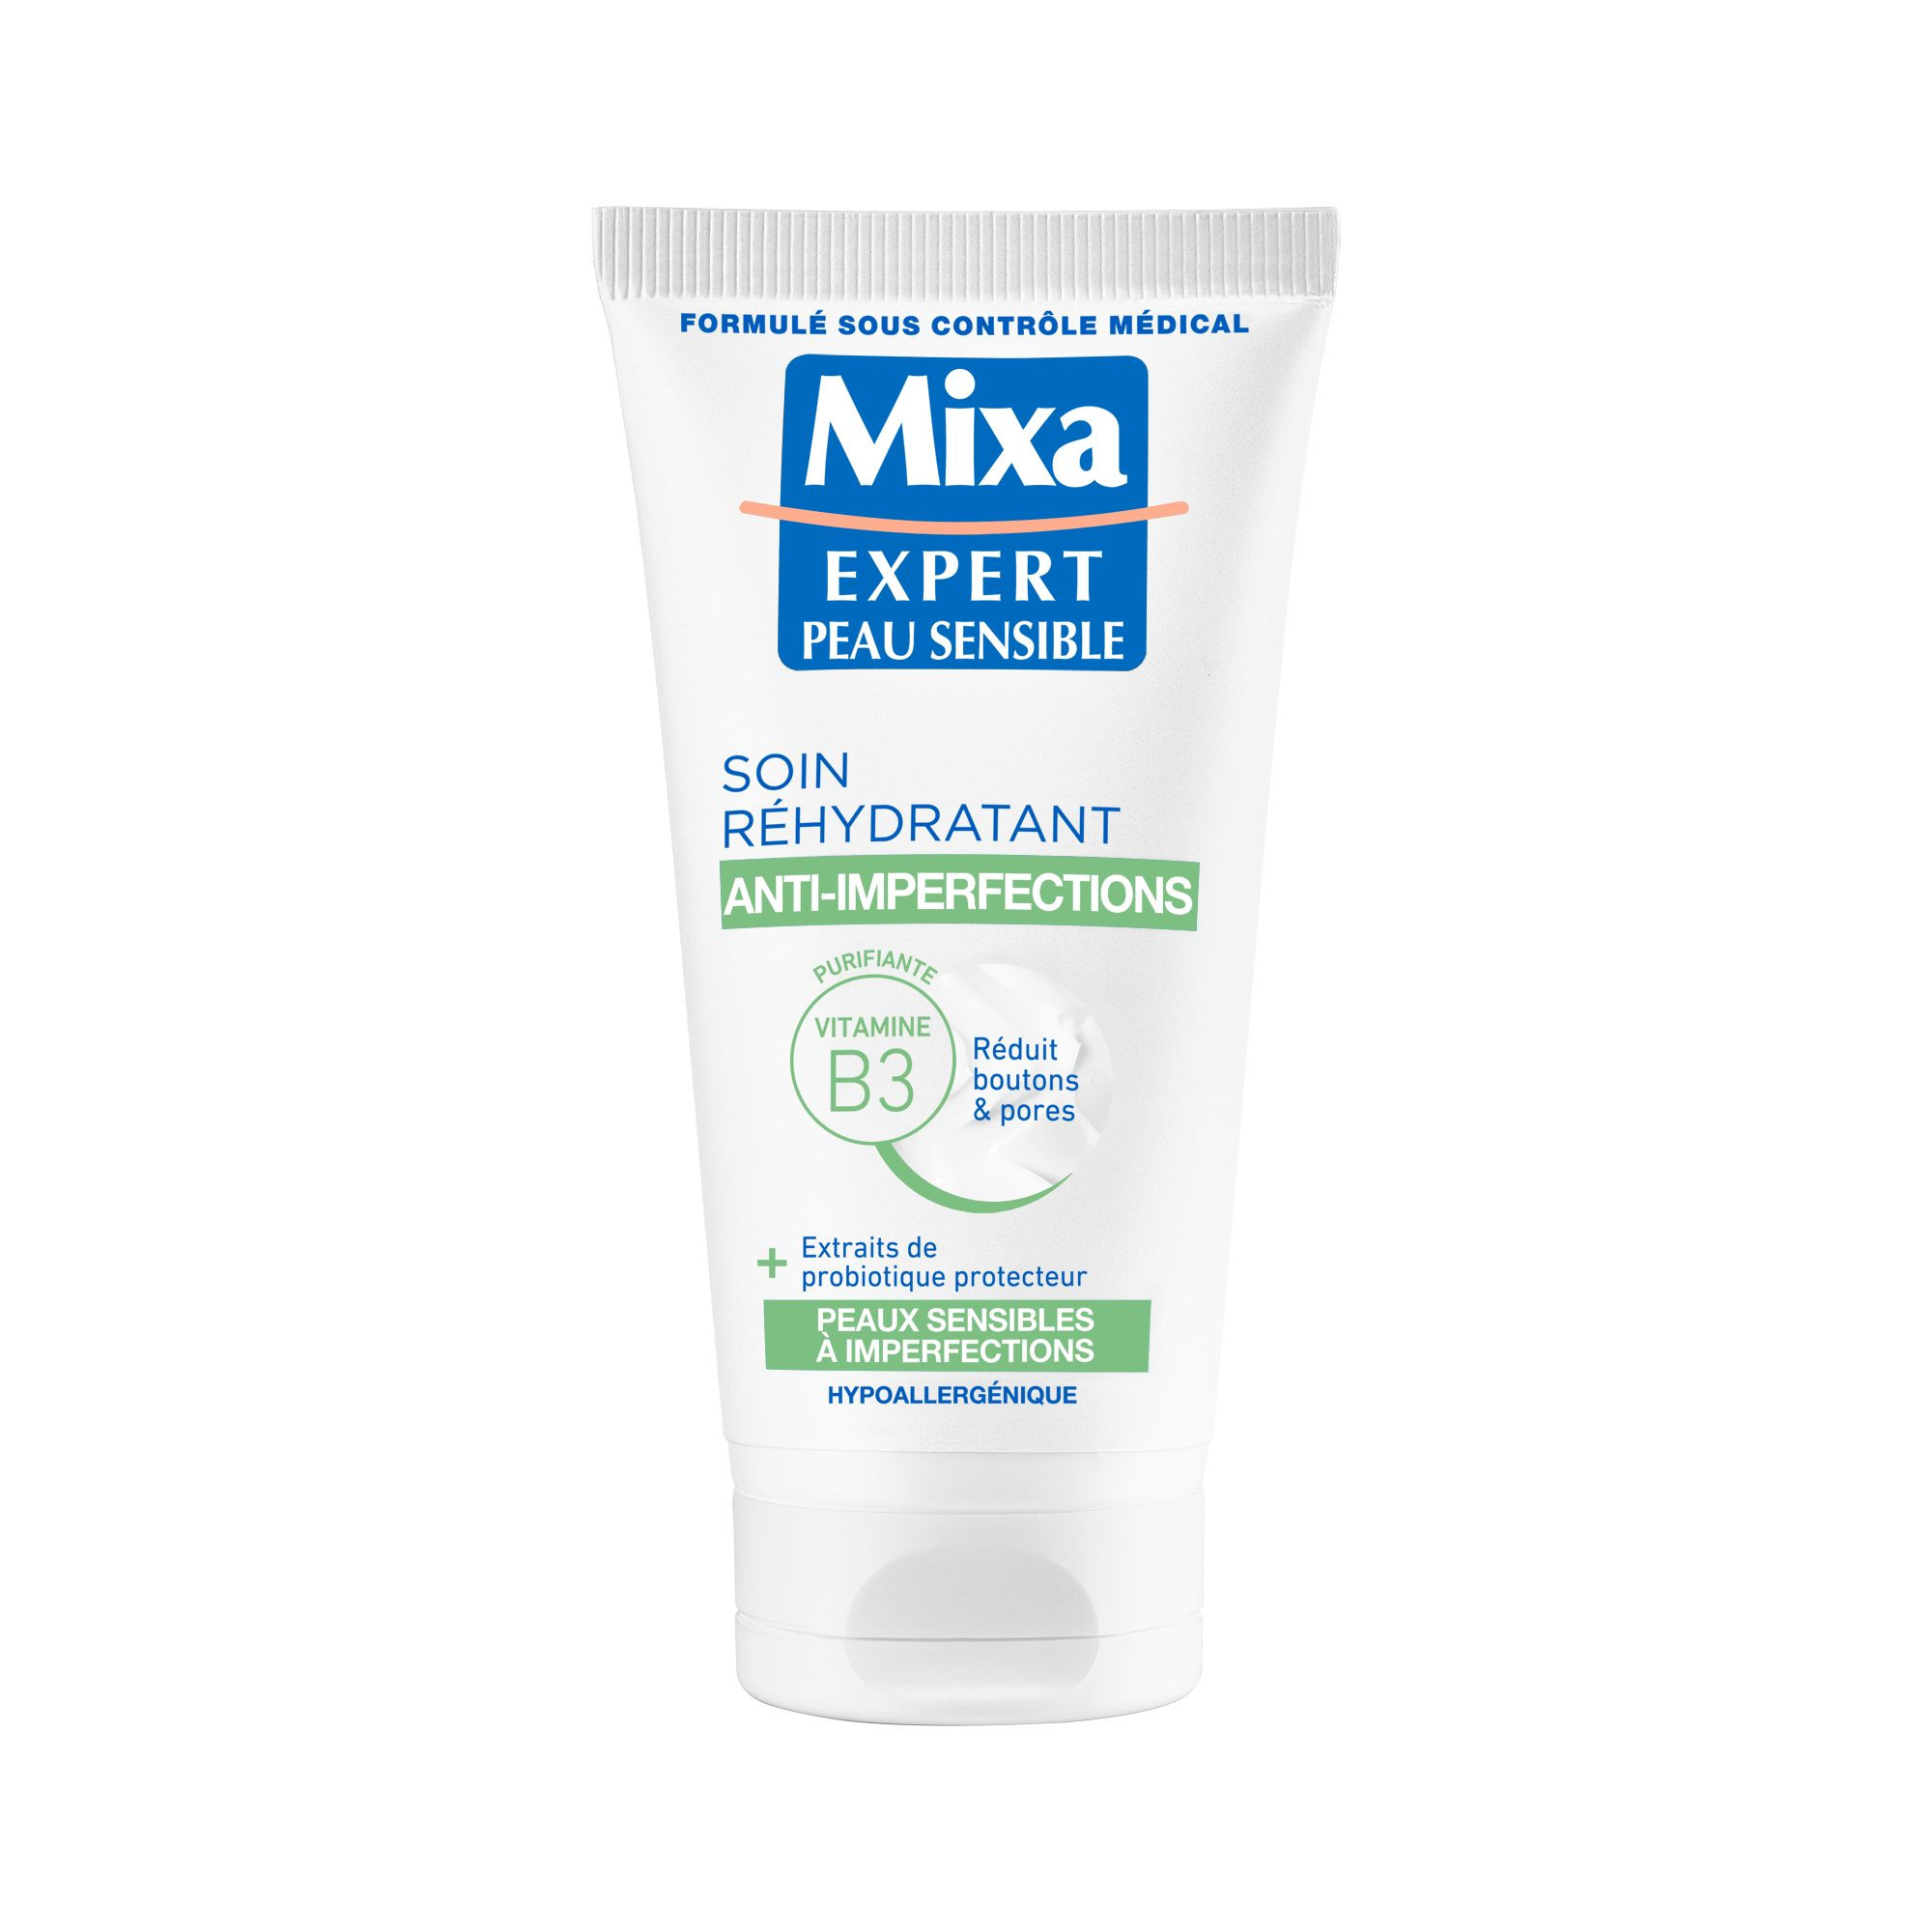 La crème visage des peaux réactives - Mixa - 100 ml